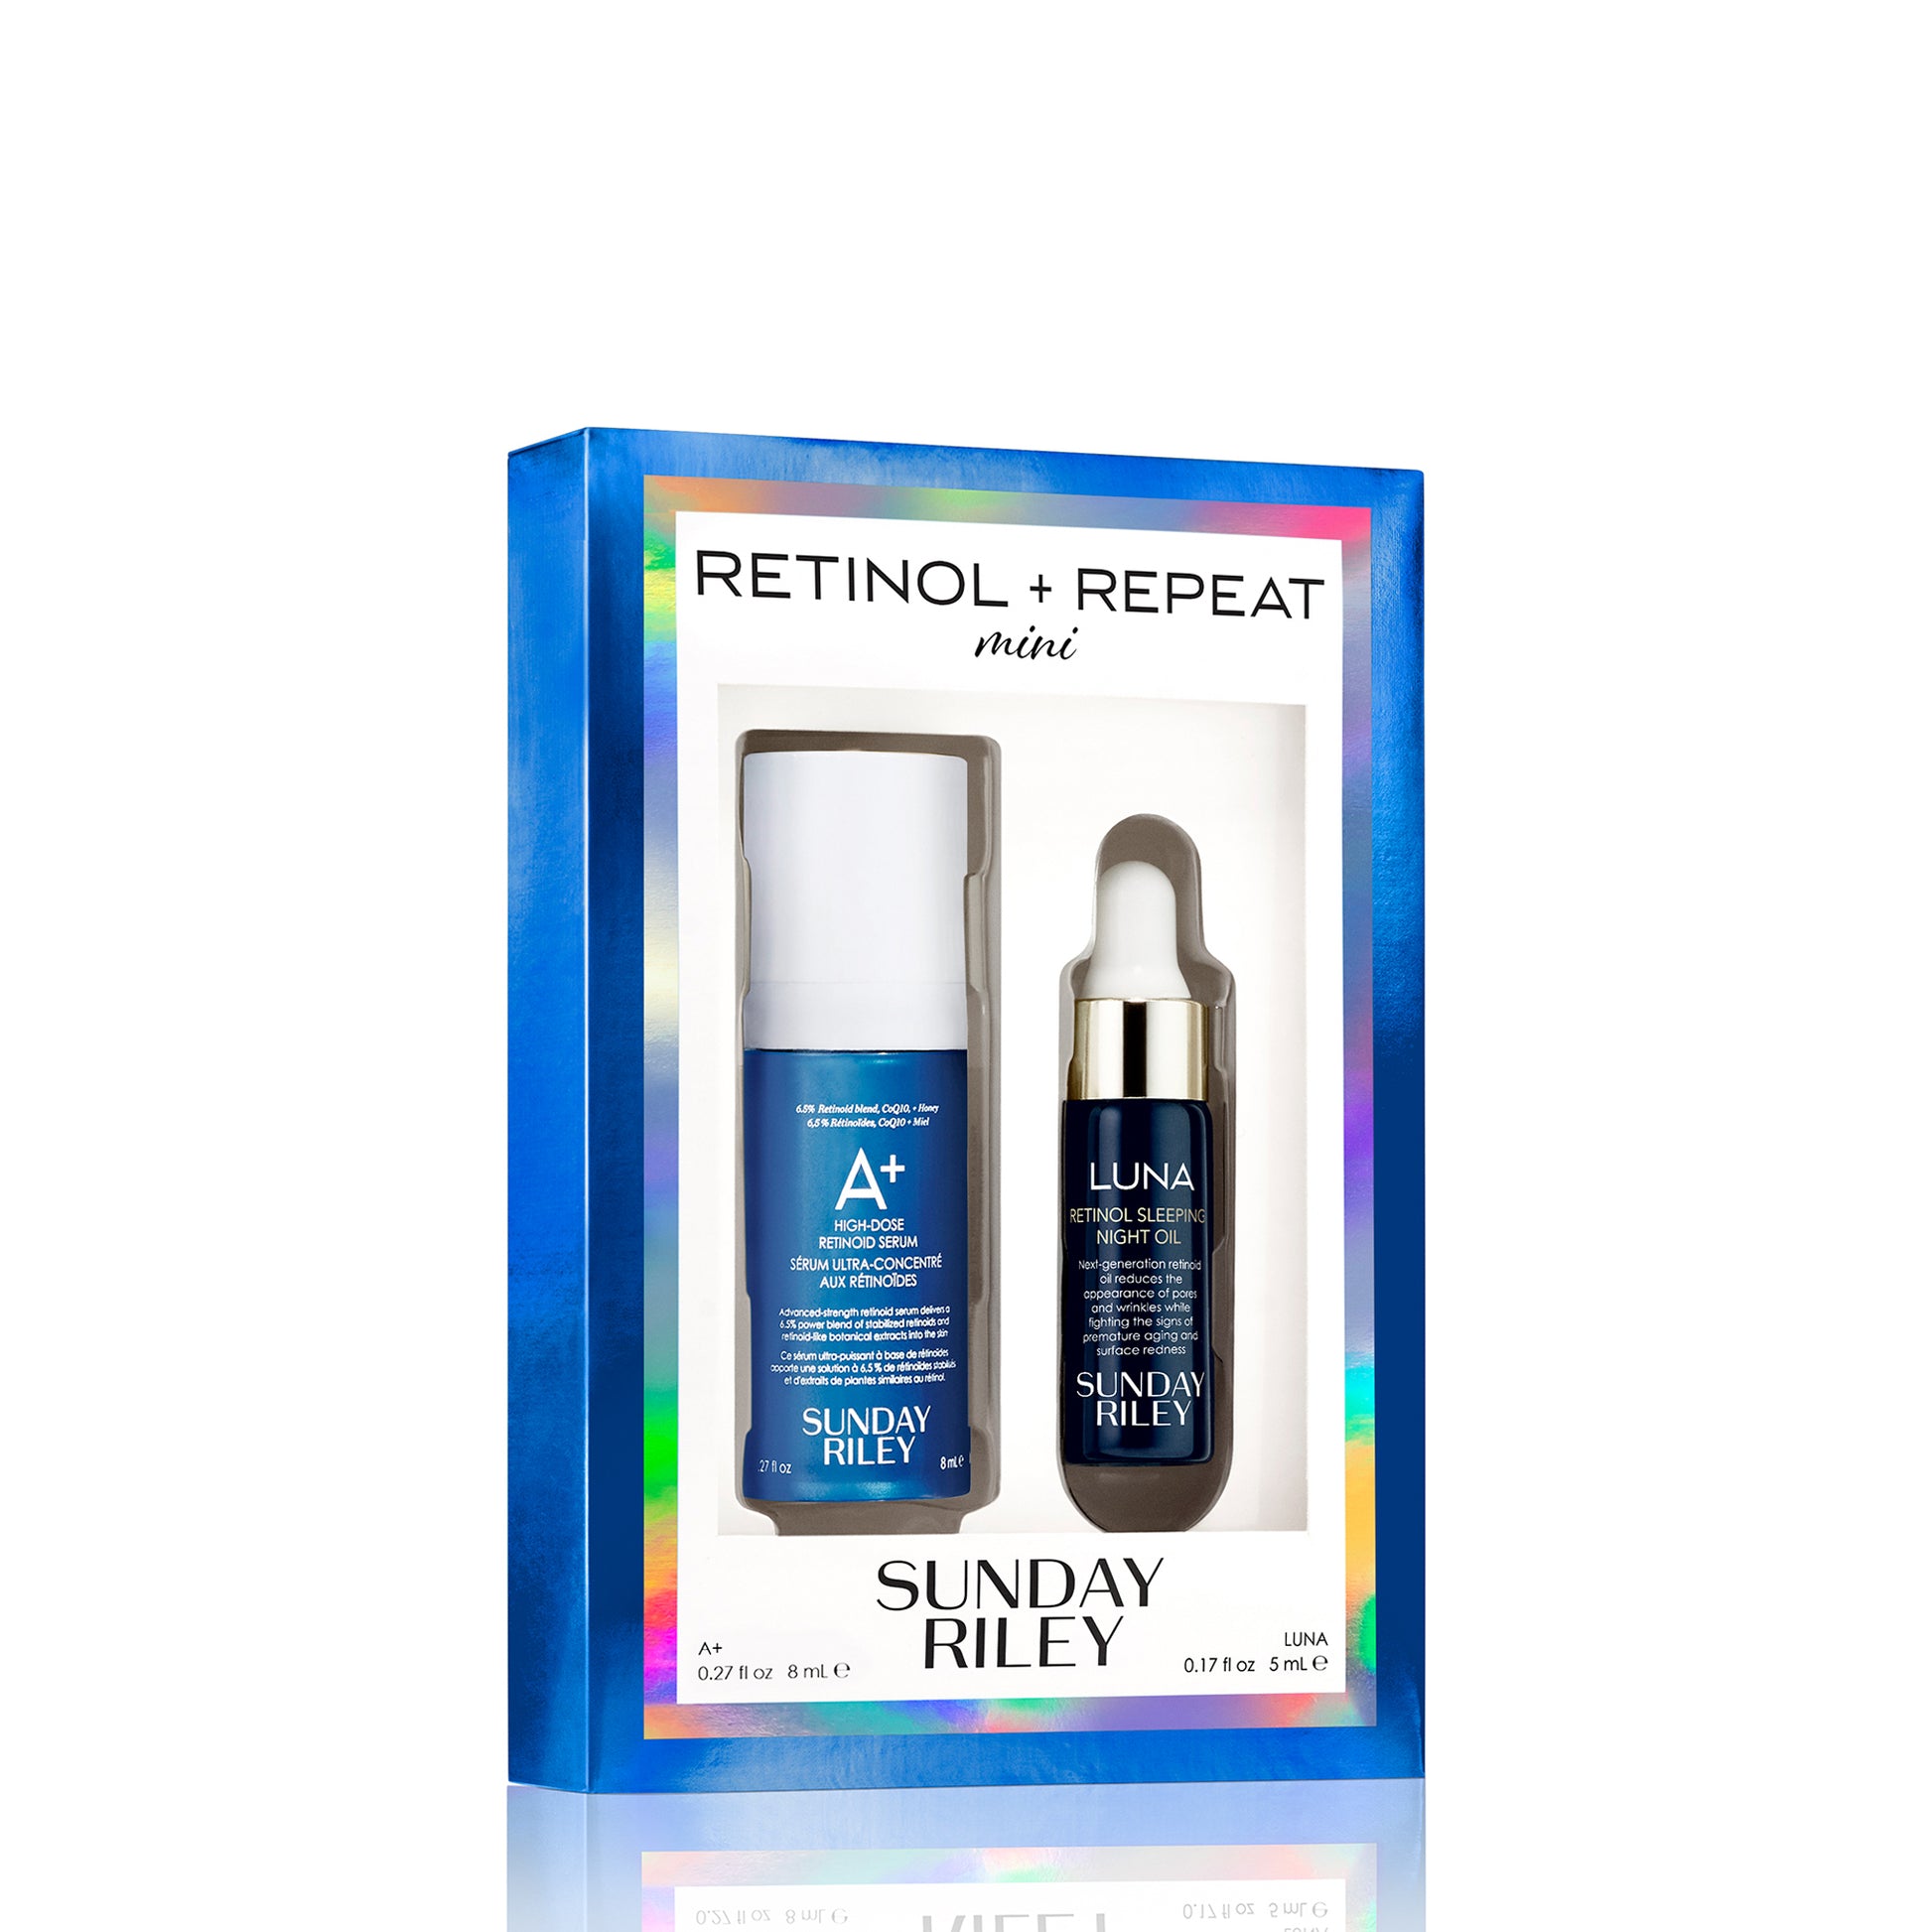 Mini Retinol and Repeat kit pack shot with A+ High Dose Retinoid Serum 8ml and Luna Retinol  Sleeping Night Oil 5ml bottles